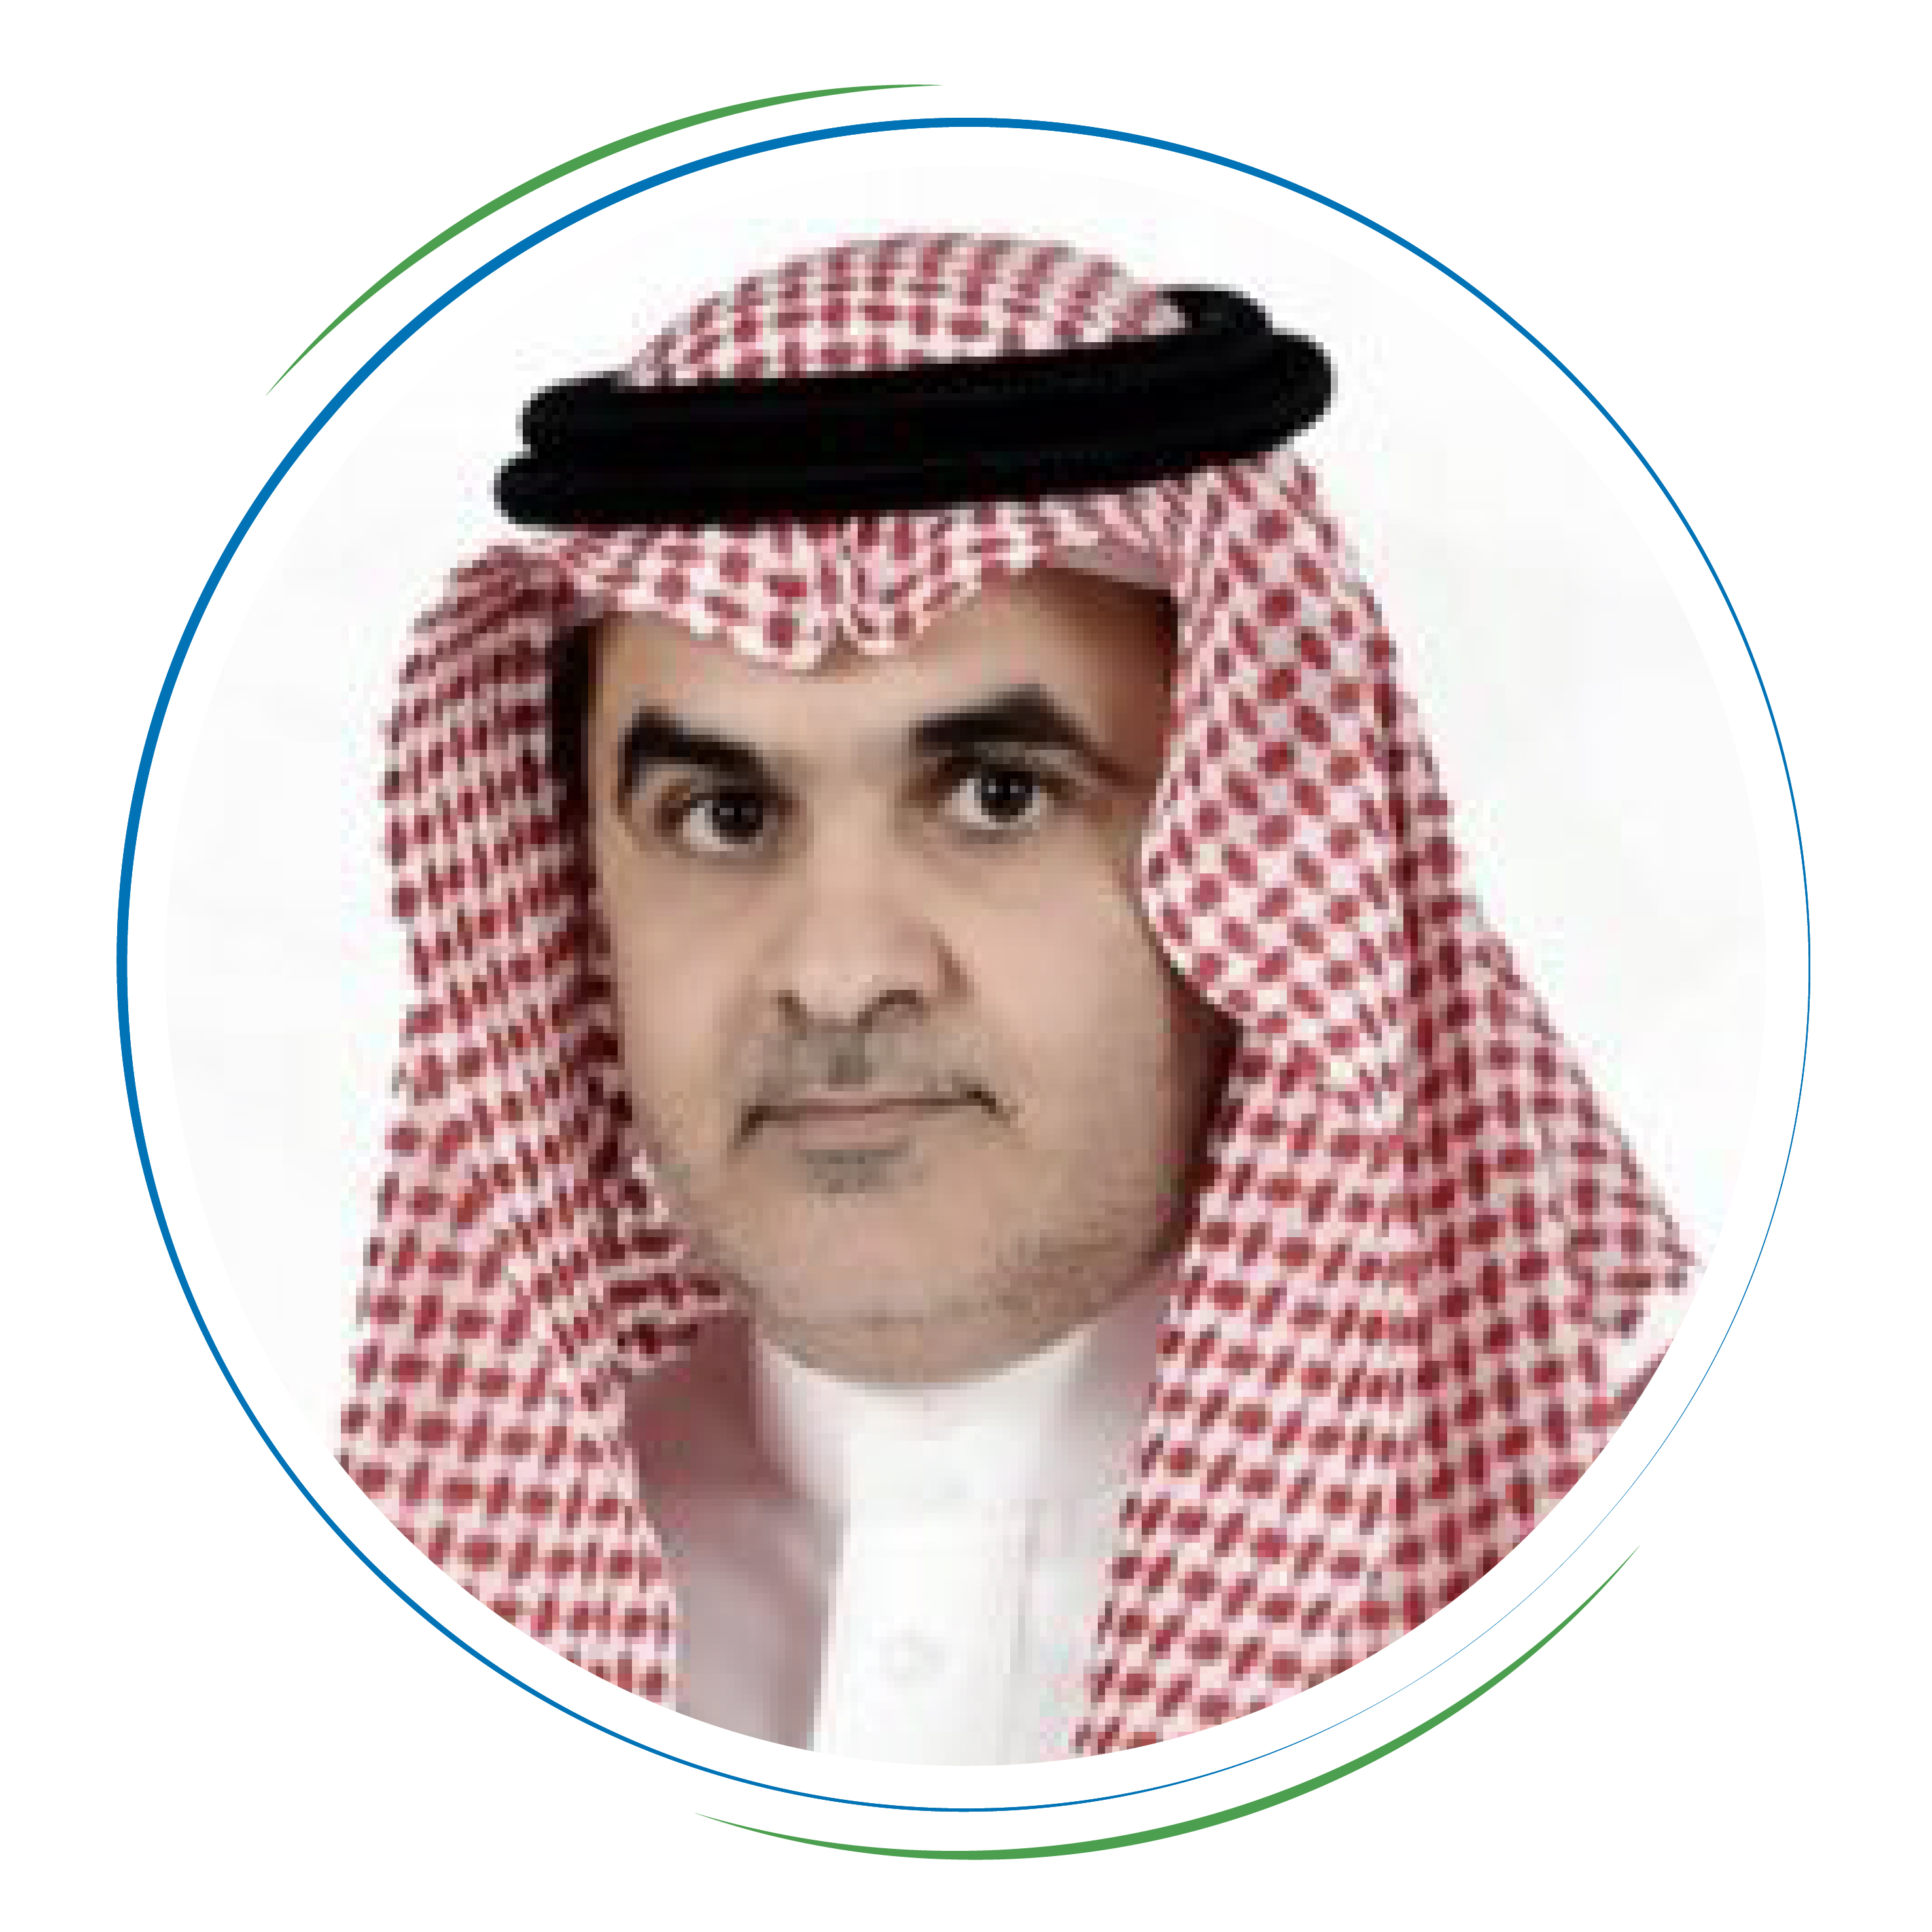 Mr. Faisal bin Marzouq Al-Fahadi